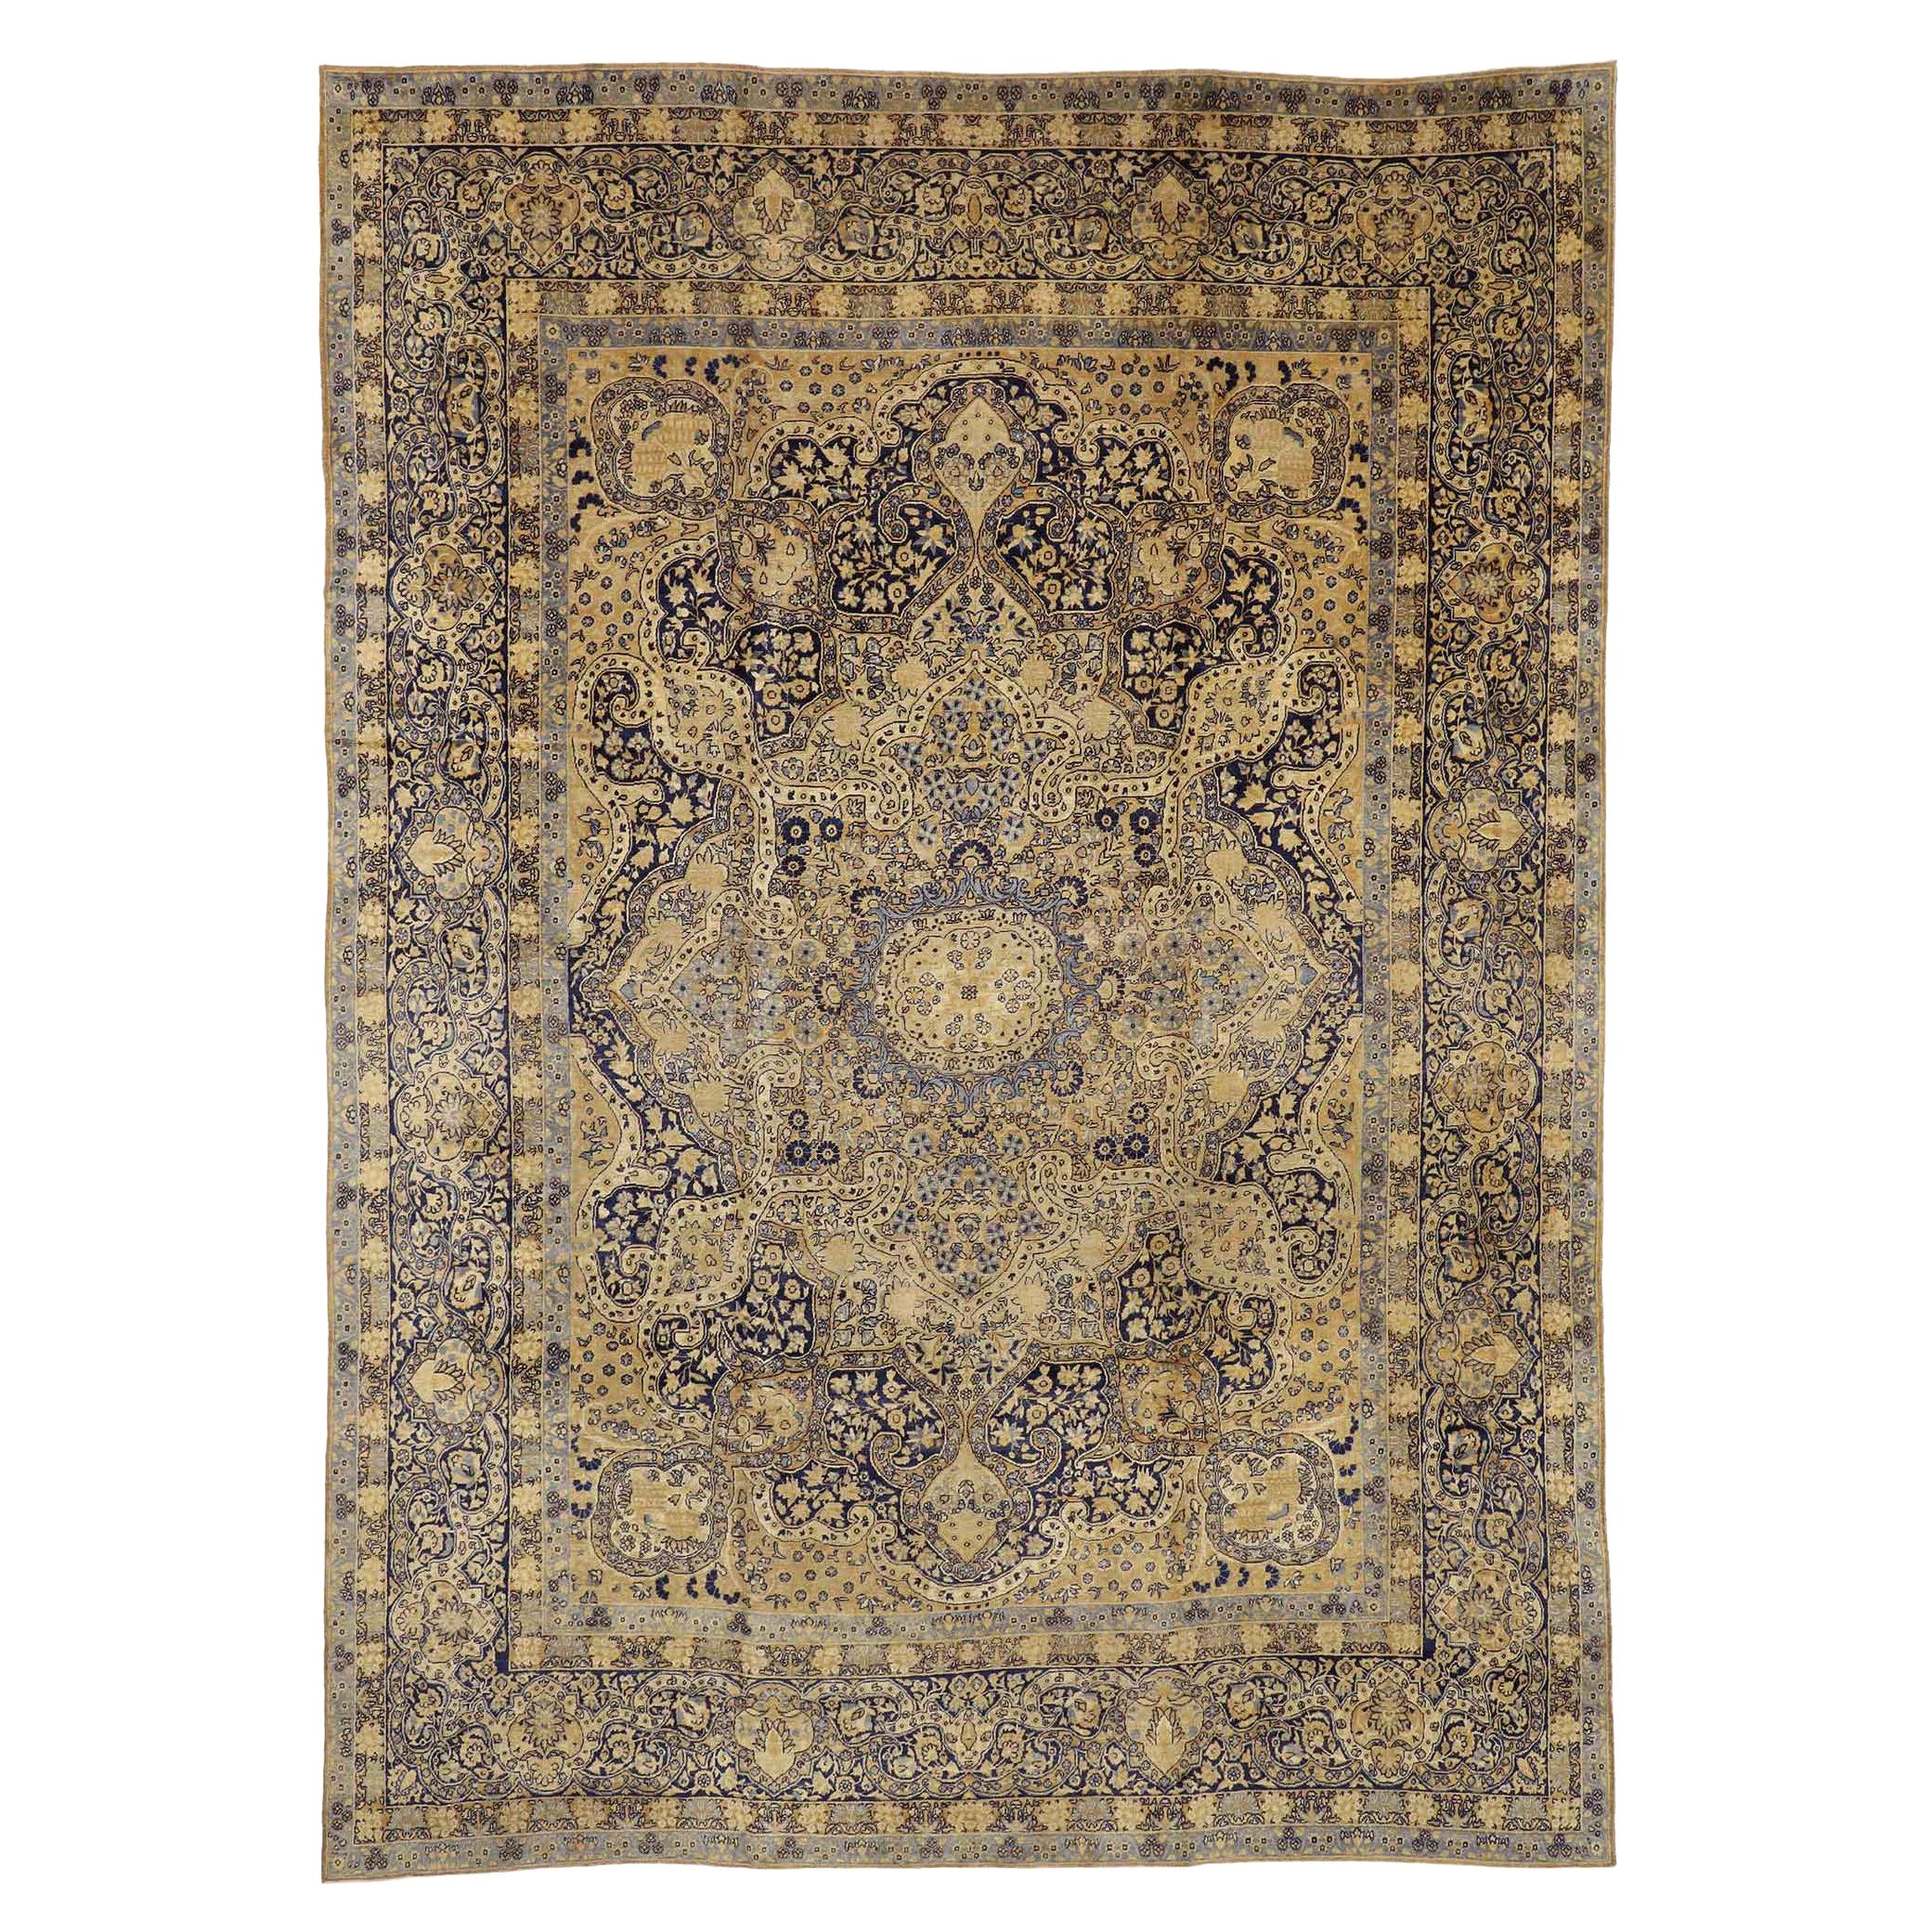 Antiker persischer Yazd-Teppich, zeitlose Eleganz trifft auf willkommene Informalität